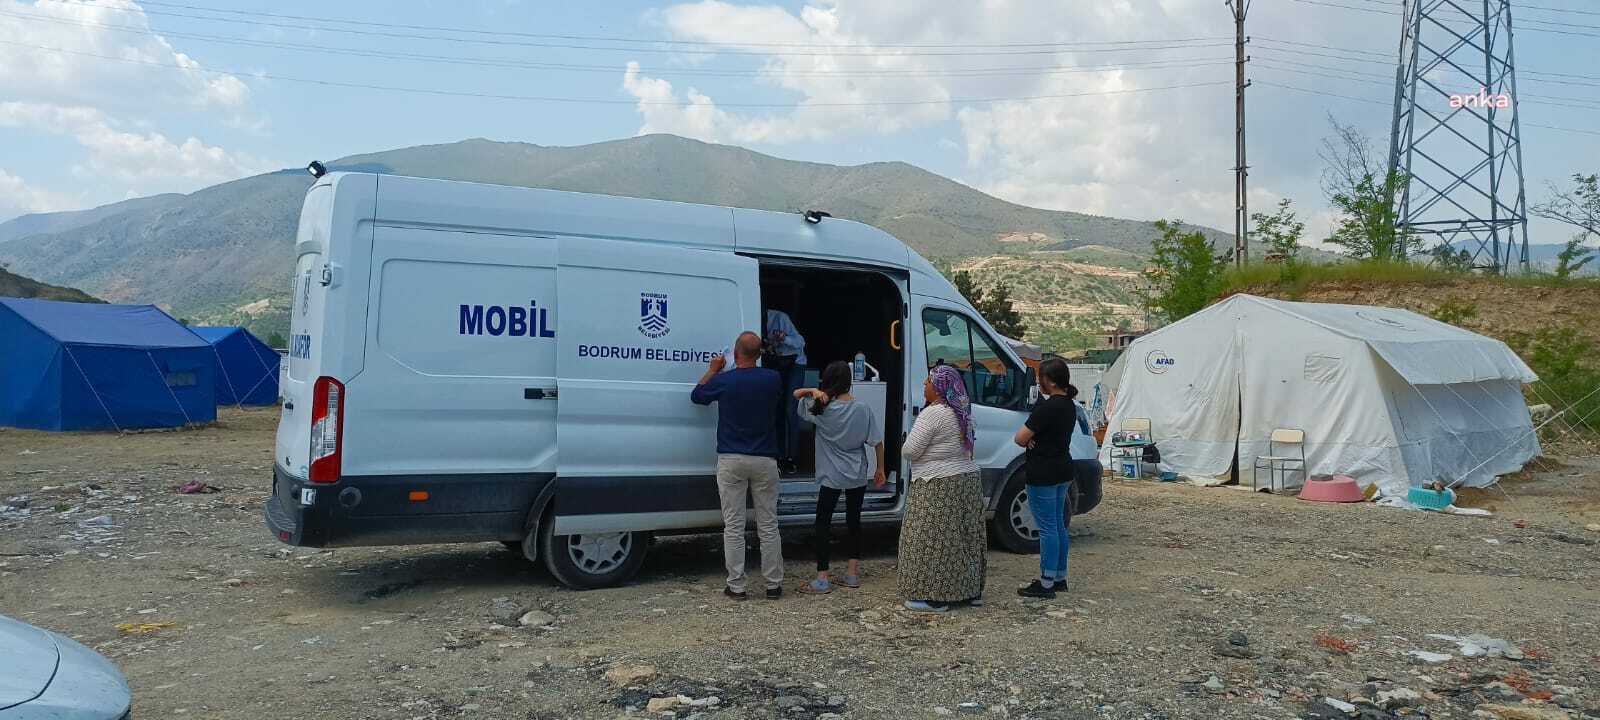 Bodrum Belediyesi'nin deprem bölgesinde başlattığı mobil kuaför hizmeti devam ediyor